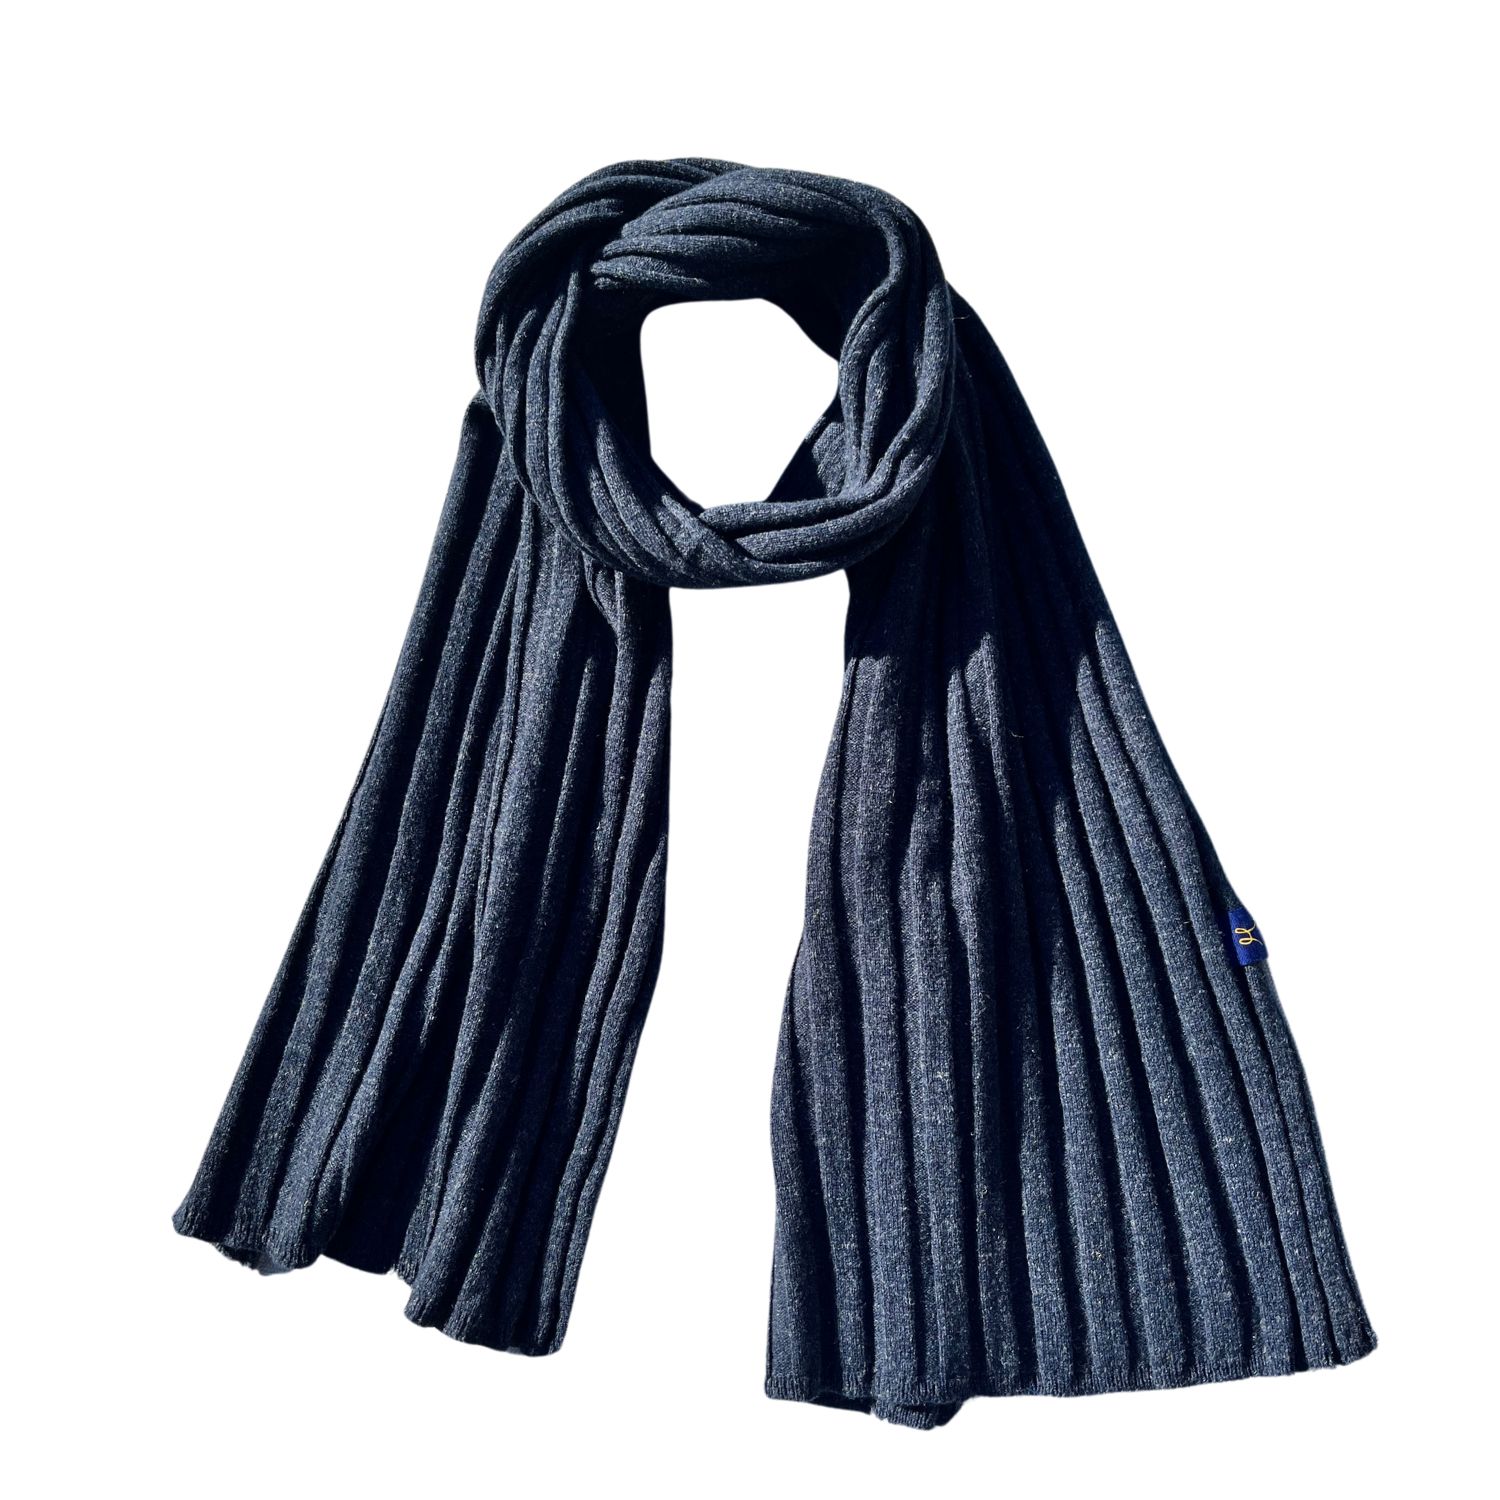 Hemprino Women's Blue ™ Hemp And Merino Rib-knit Scarf - Navy In Gray